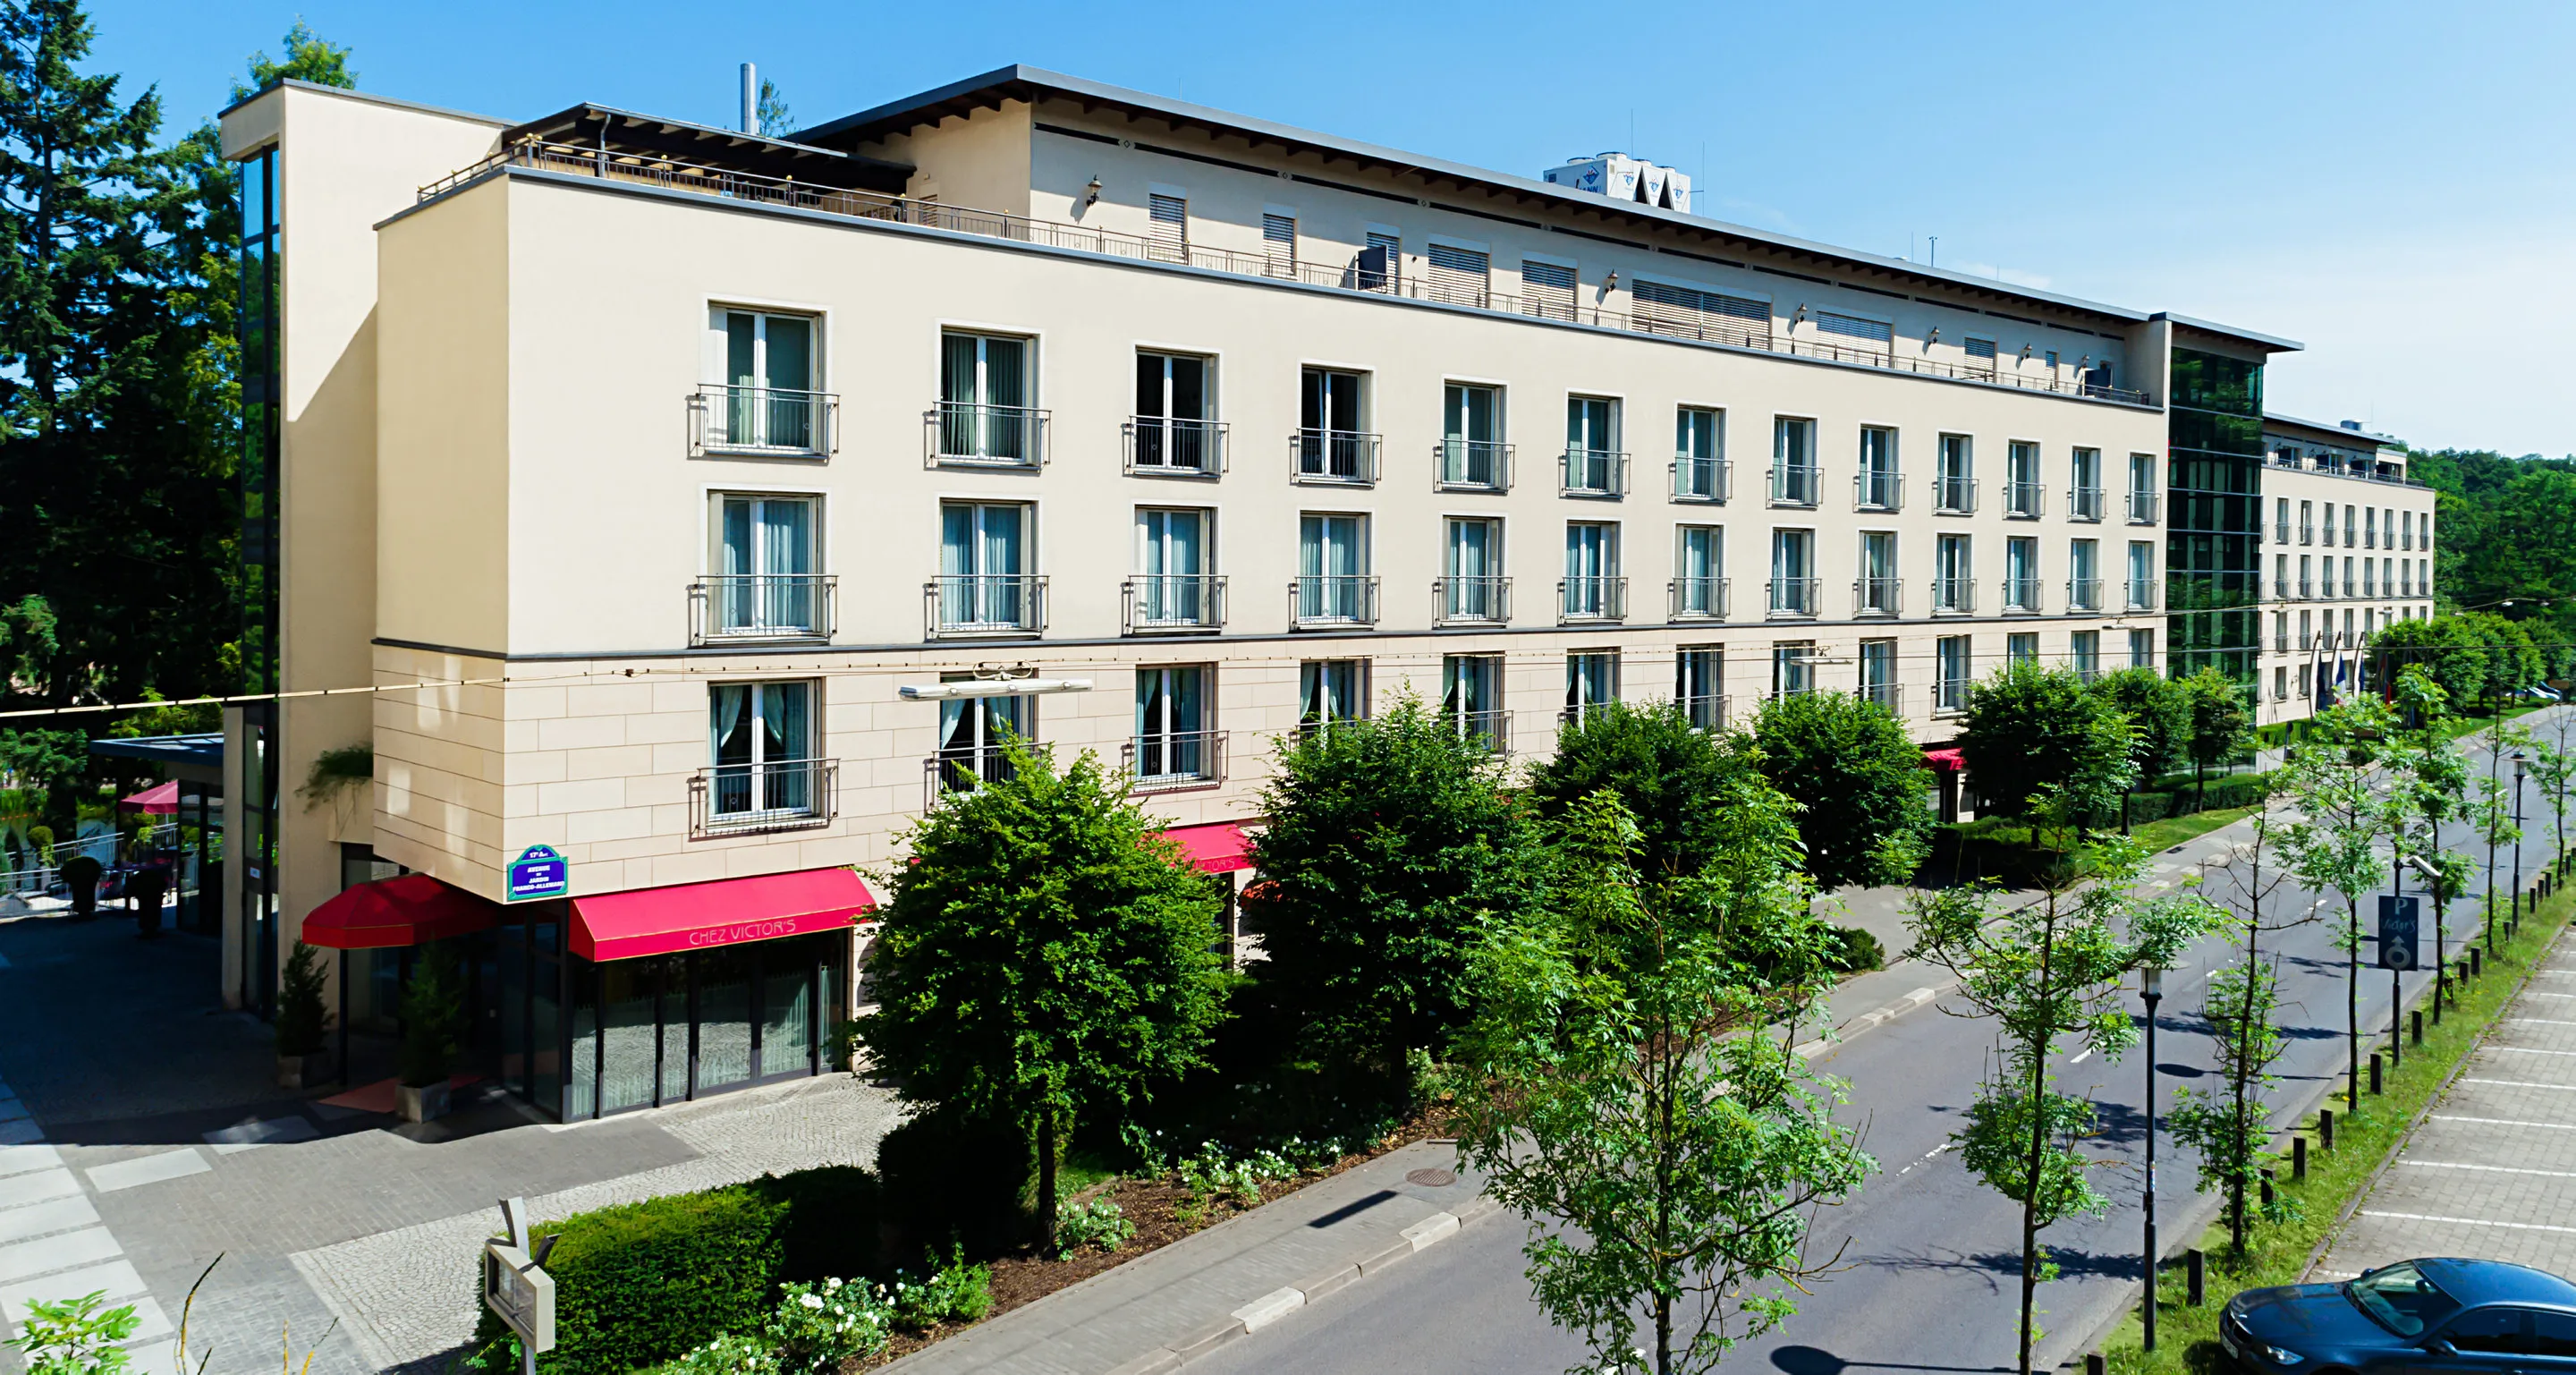 Building hotel Victor's Residenz-Hotel Saarbrücken